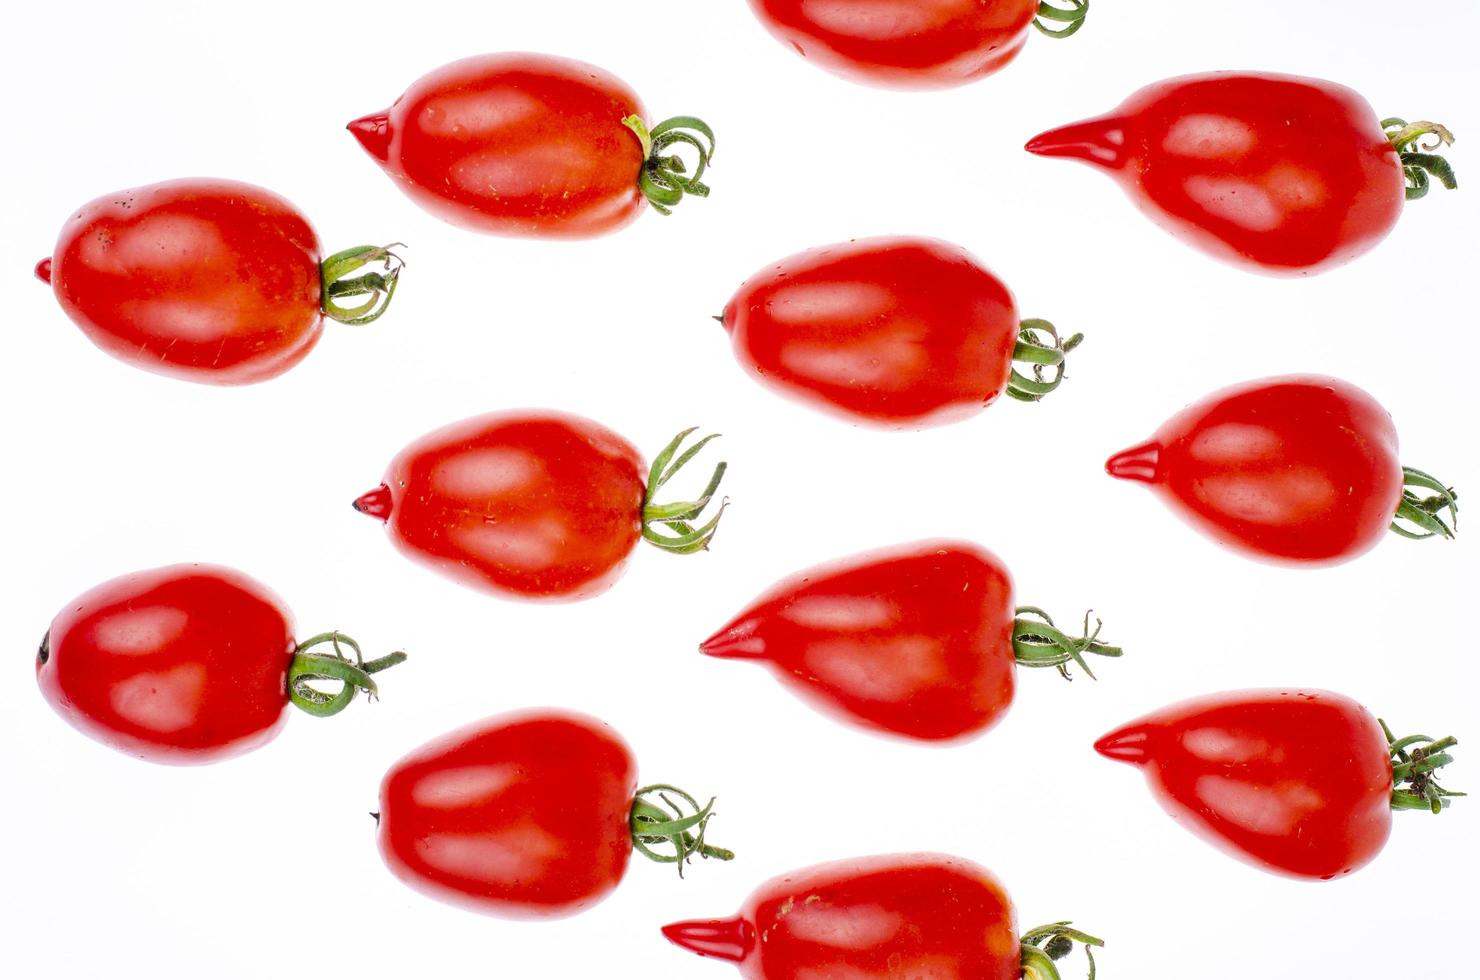 patrón de alimentos, fondo - tomates rojos aislados en blanco. foto de estudio.